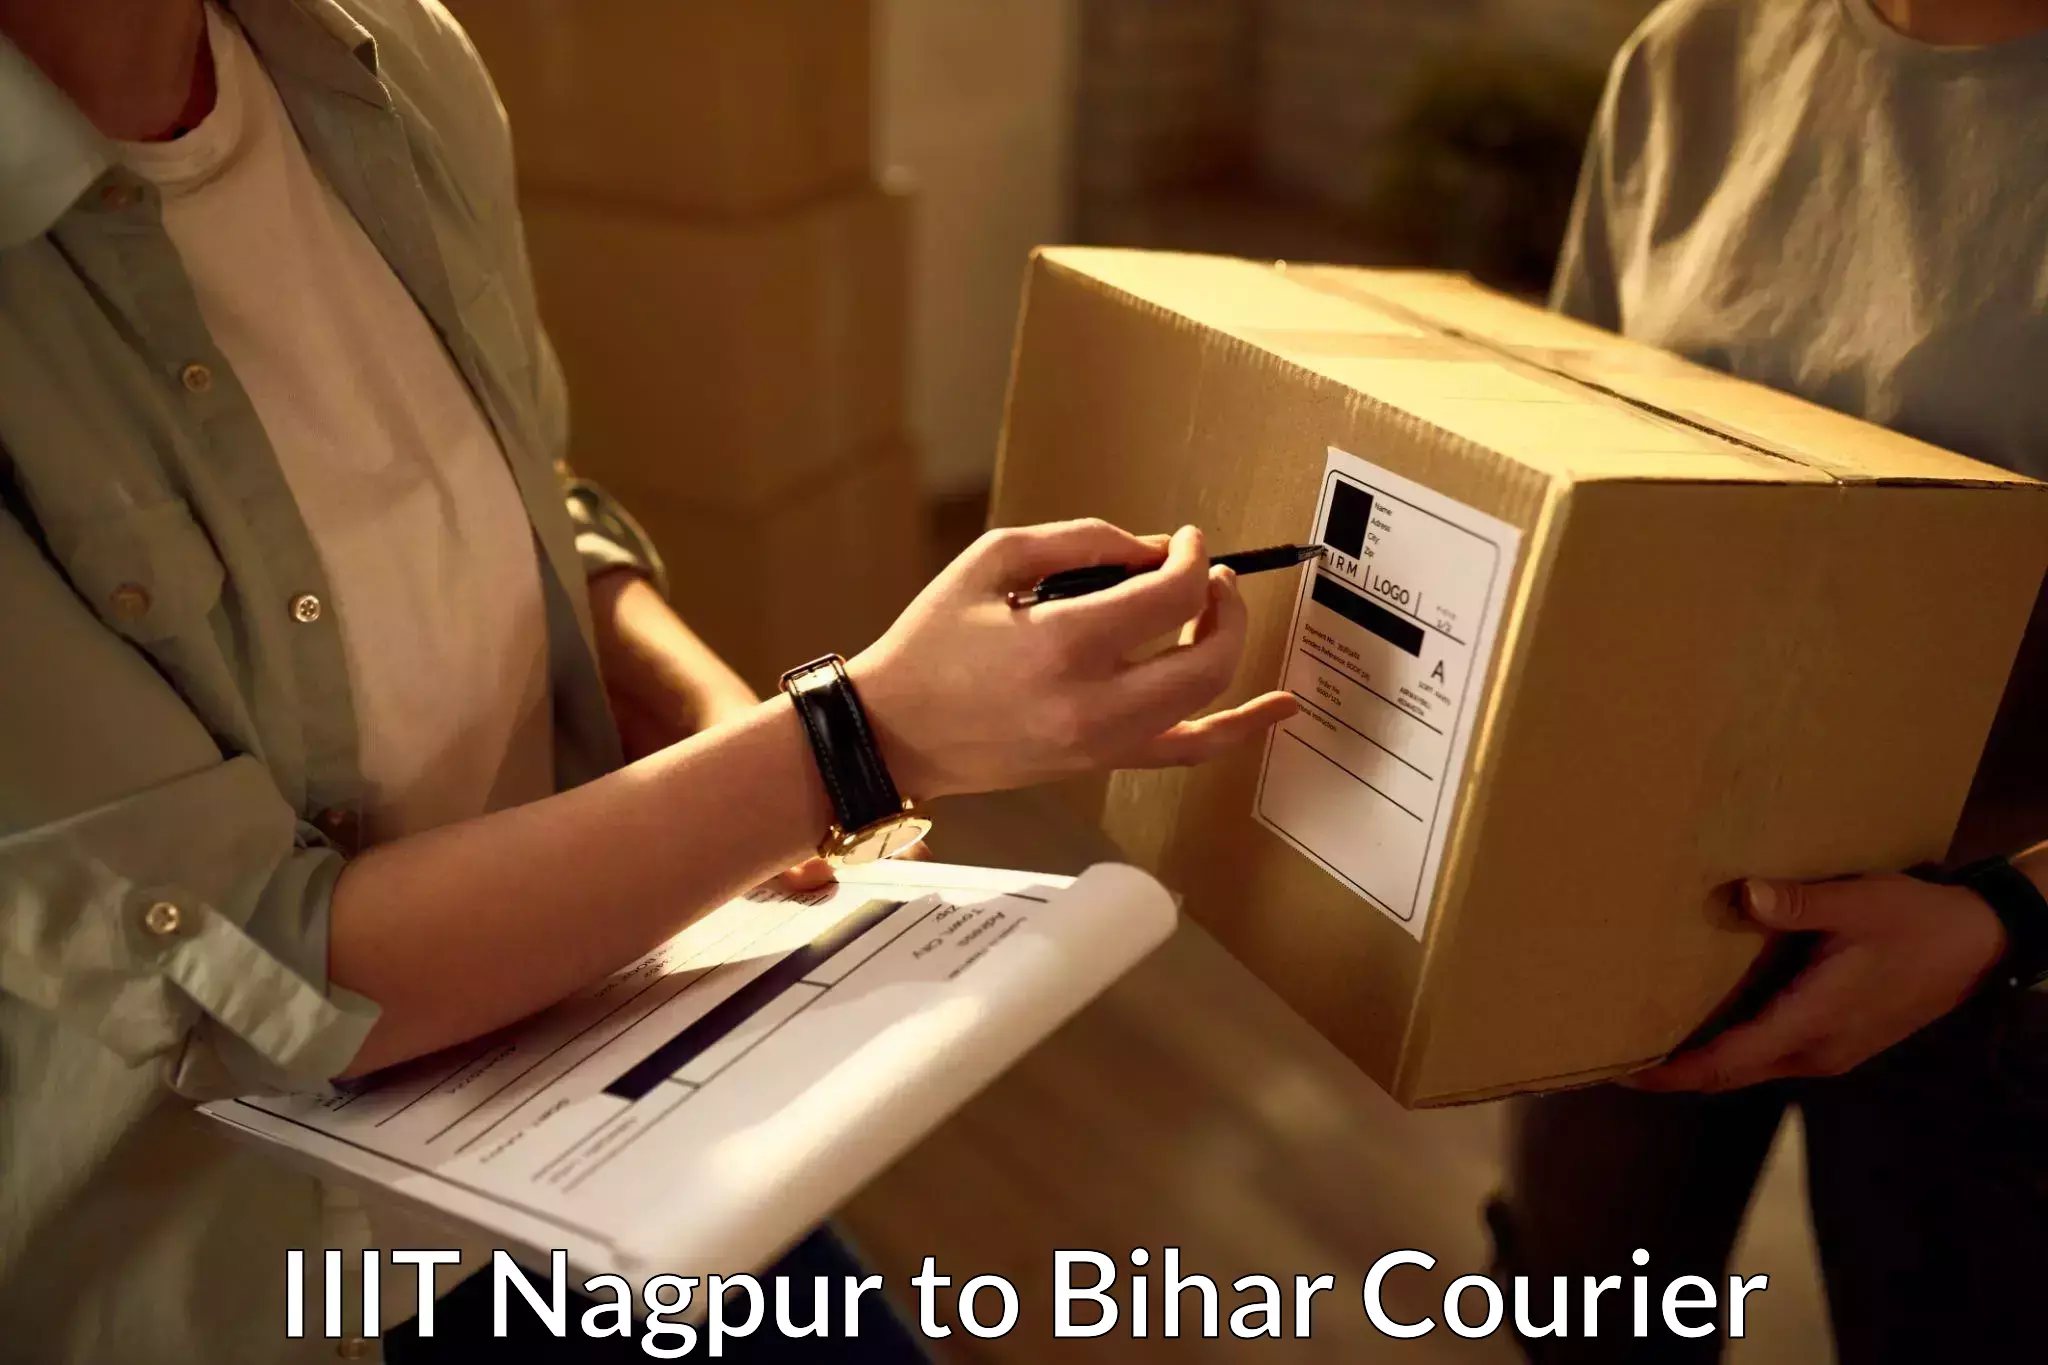 Doorstep delivery service IIIT Nagpur to Birpur